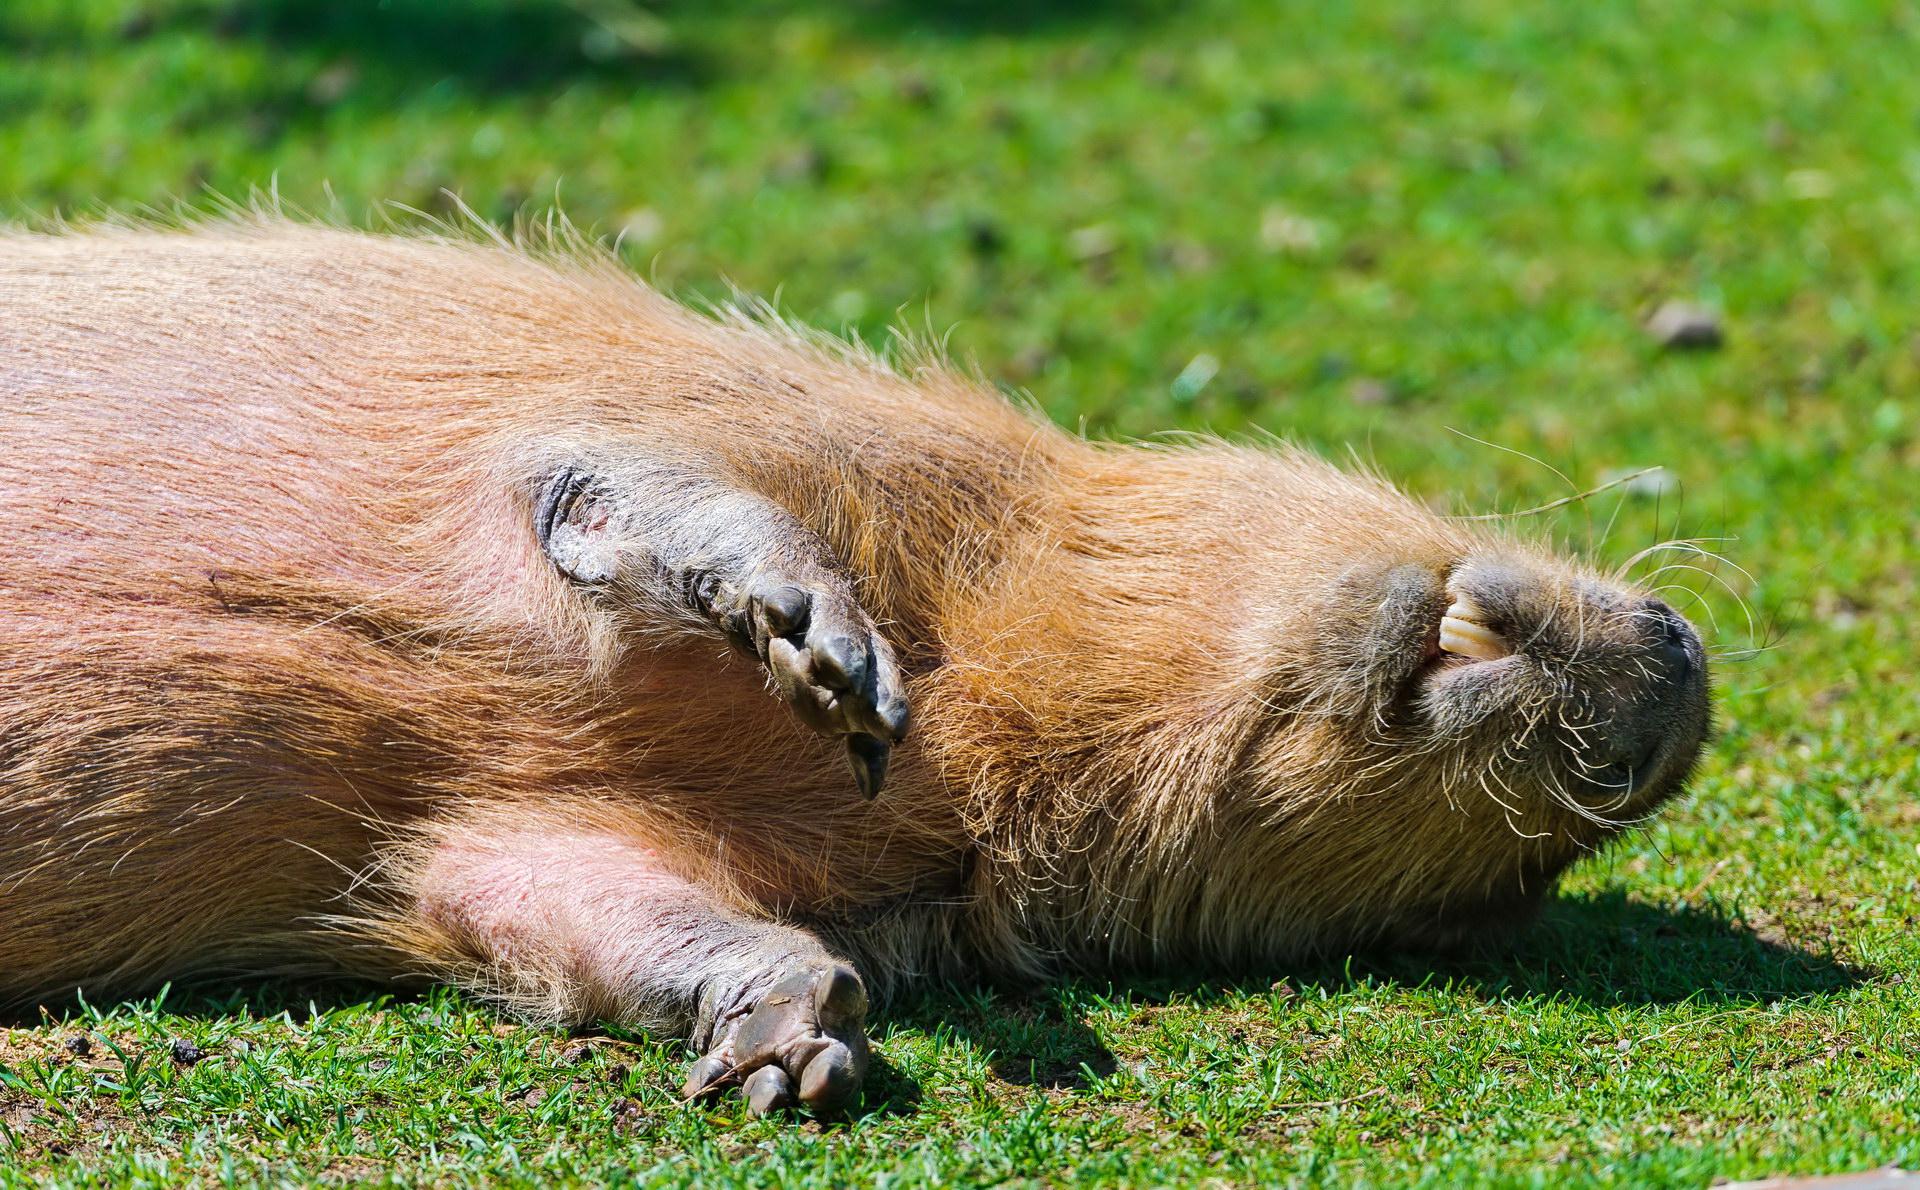 Capybara so